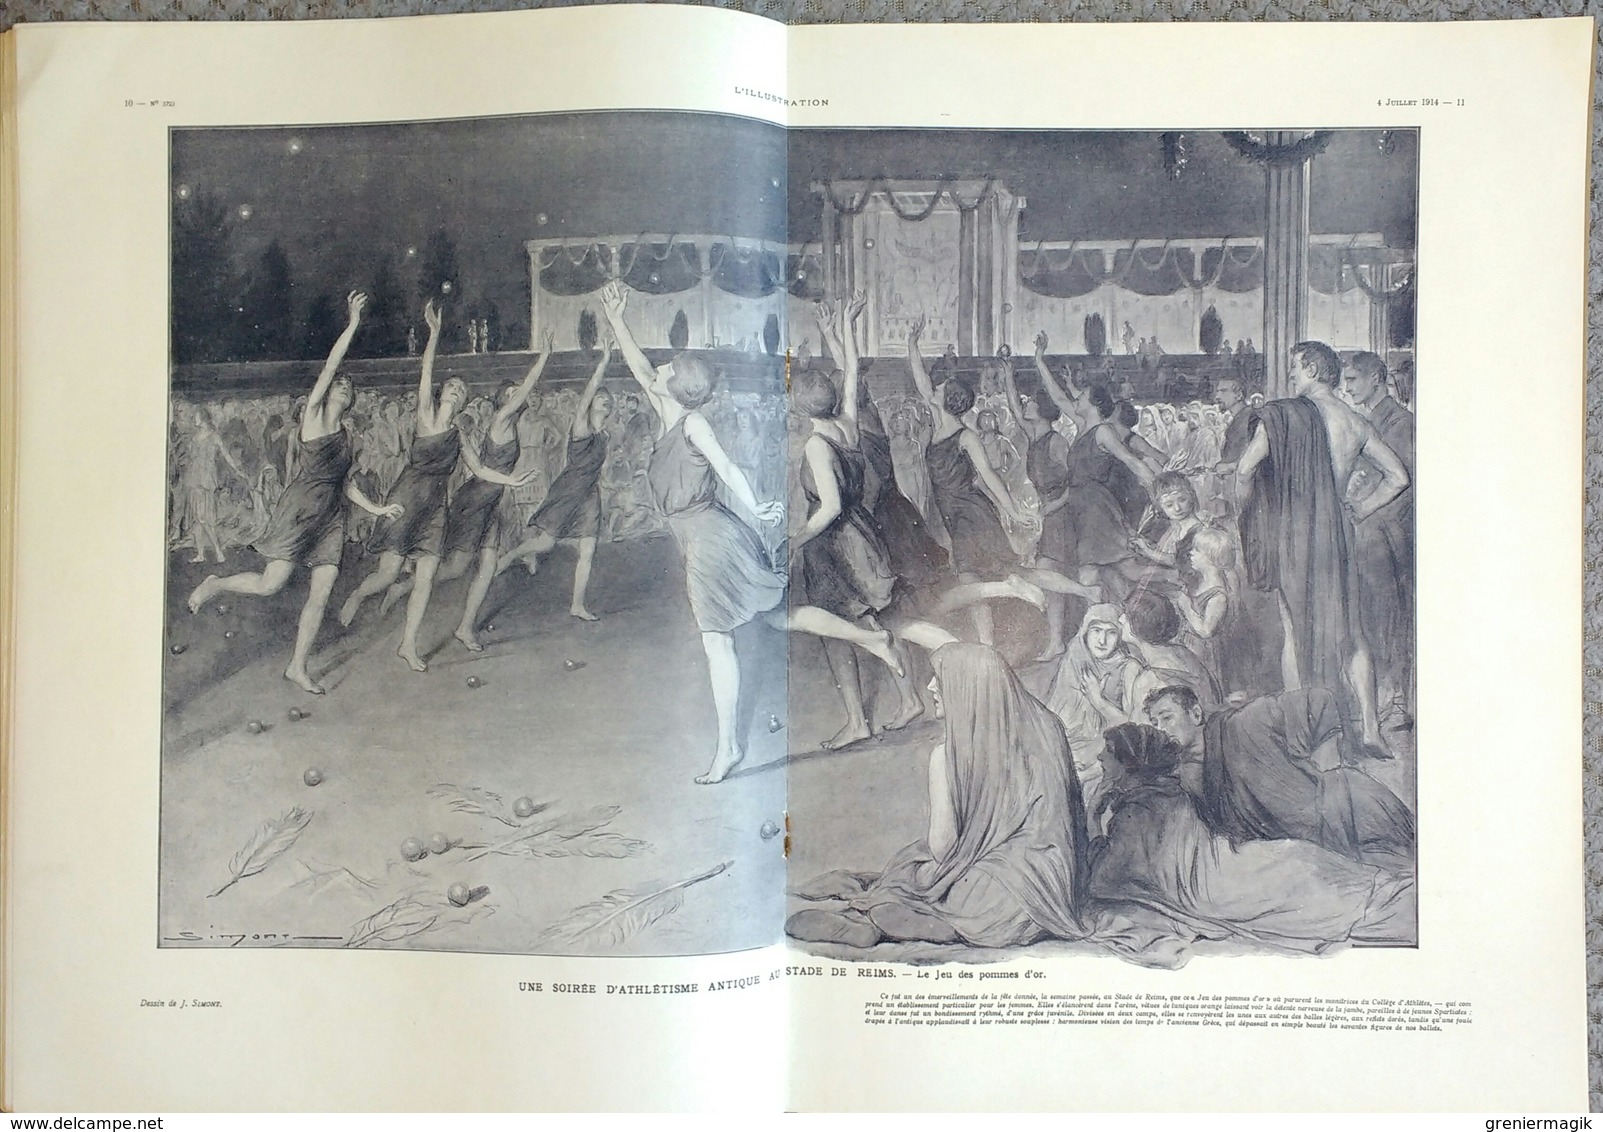 L'Illustration 3723 4 juillet 1914 Attentat de Sarajevo François-Ferdinand/Victor Hugo/Stade de Reims/Prise de Kenifra